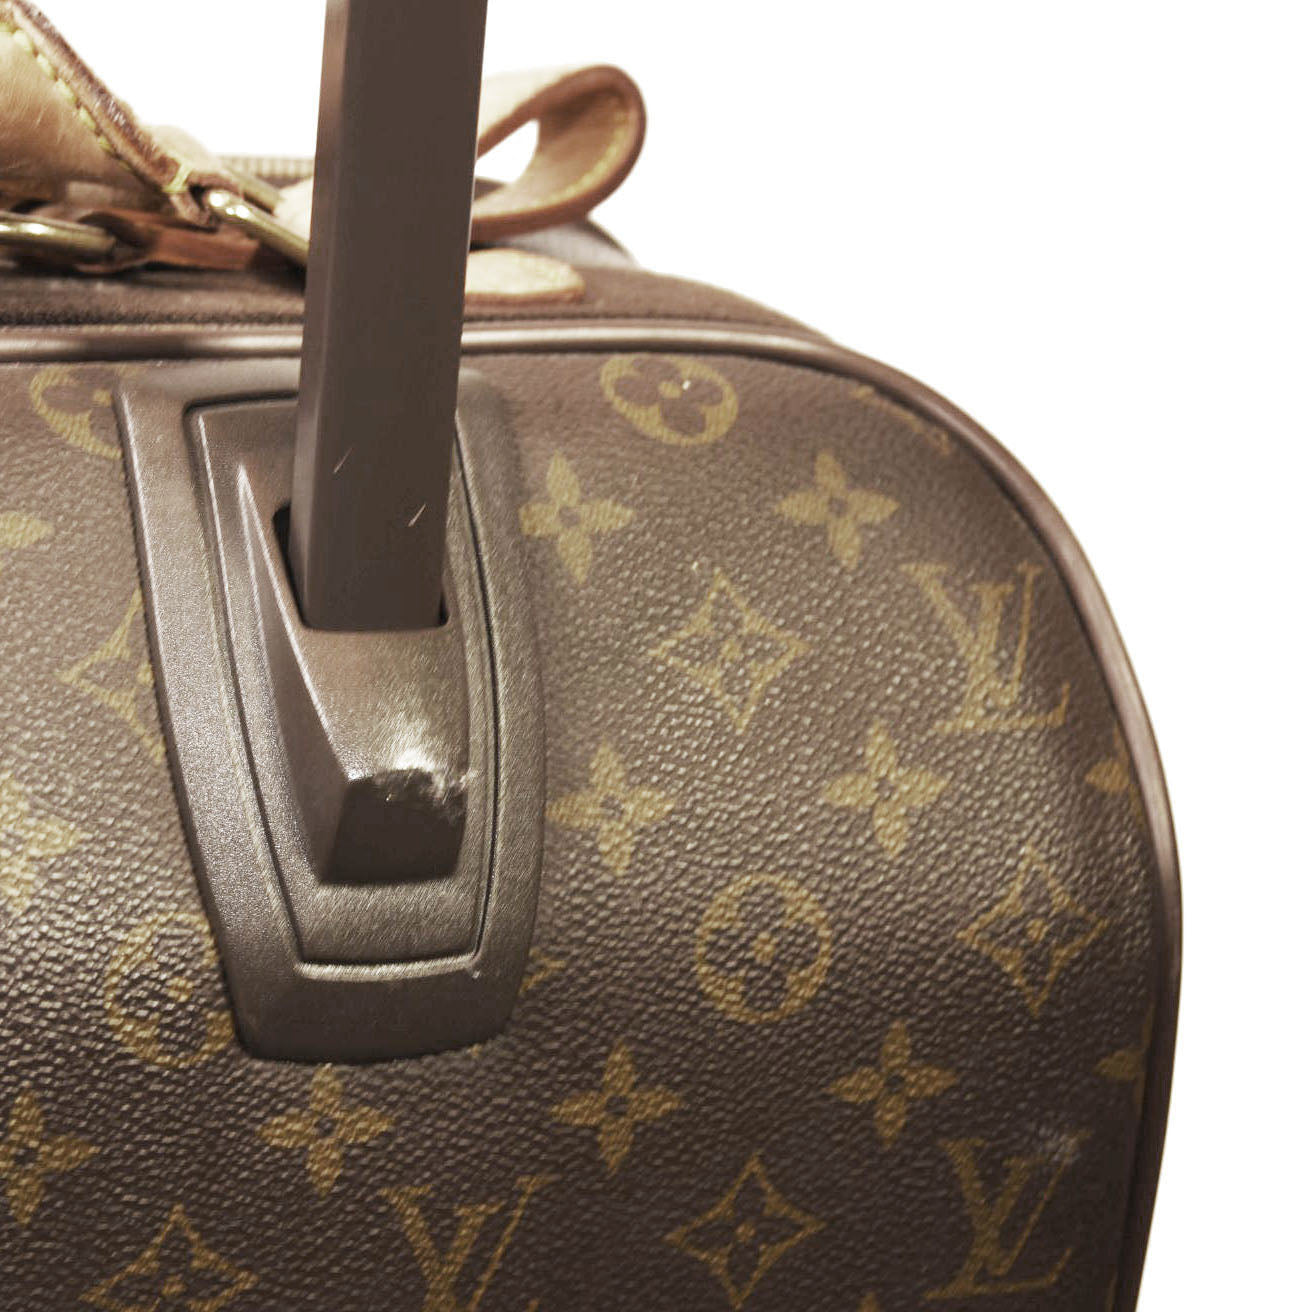 Brown Louis Vuitton Monogram Pegase 55 Travel Bag